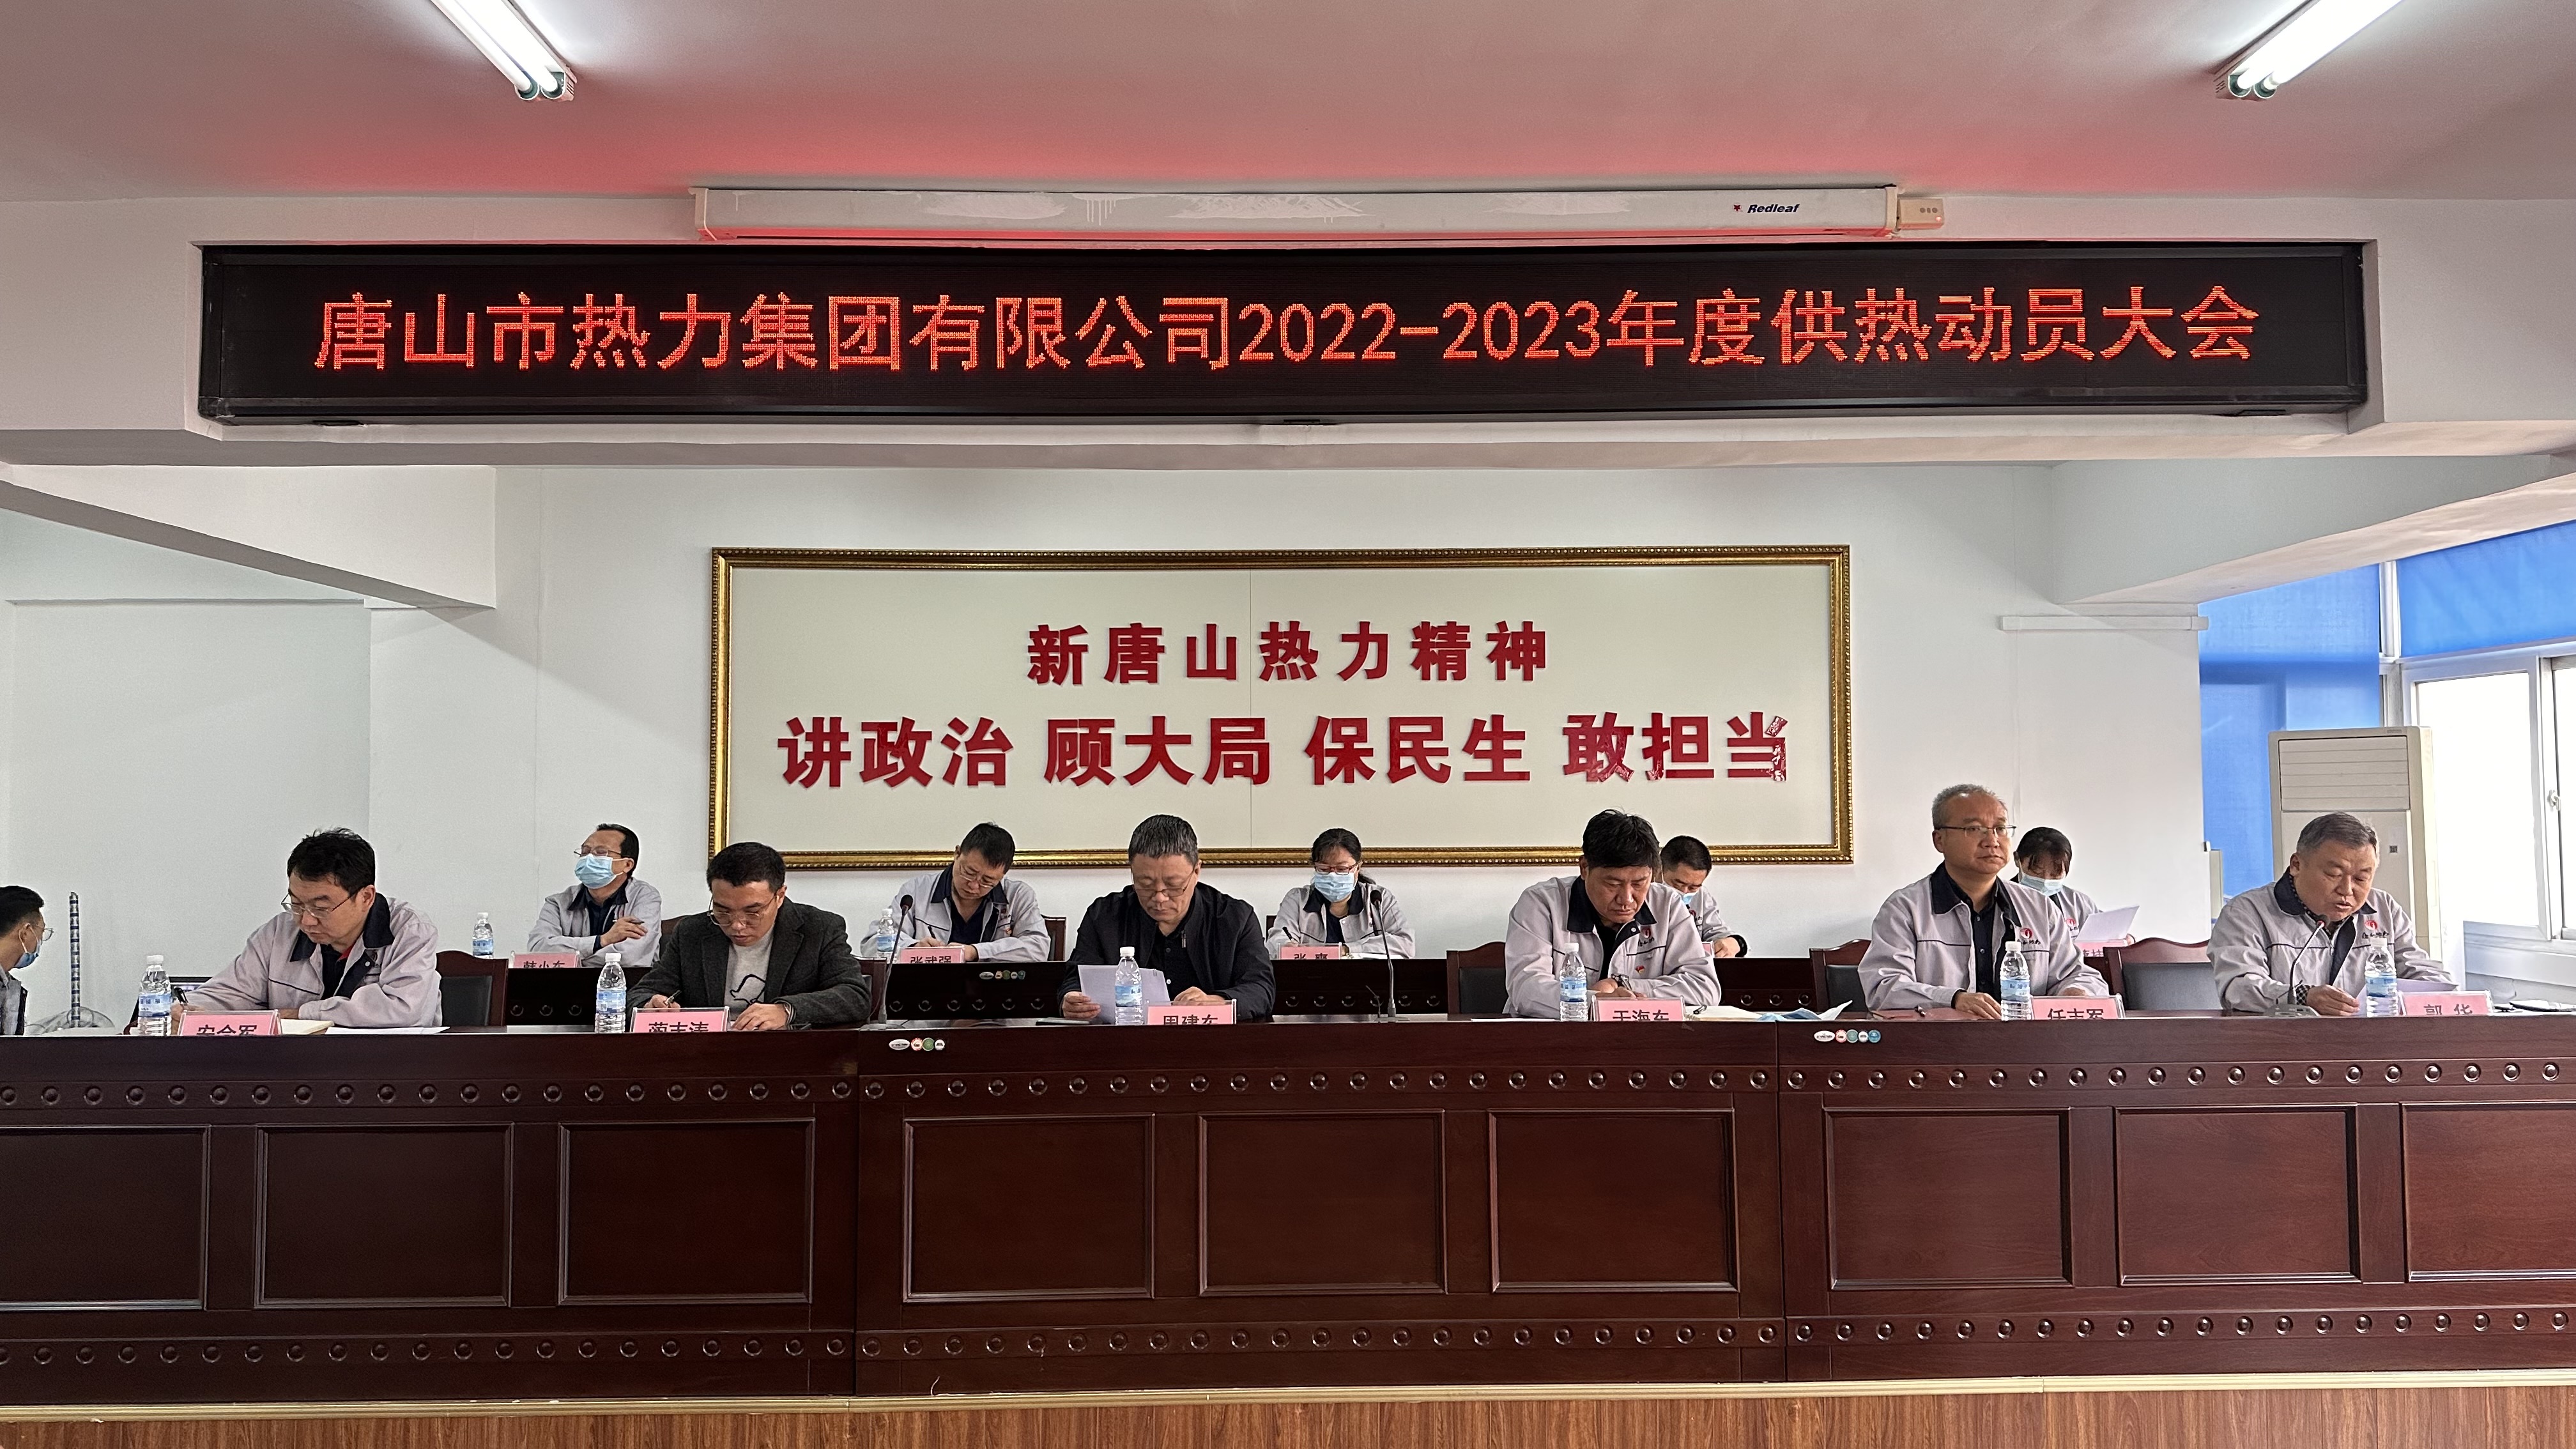 集团公司召开2022-2023年度供热动员大会